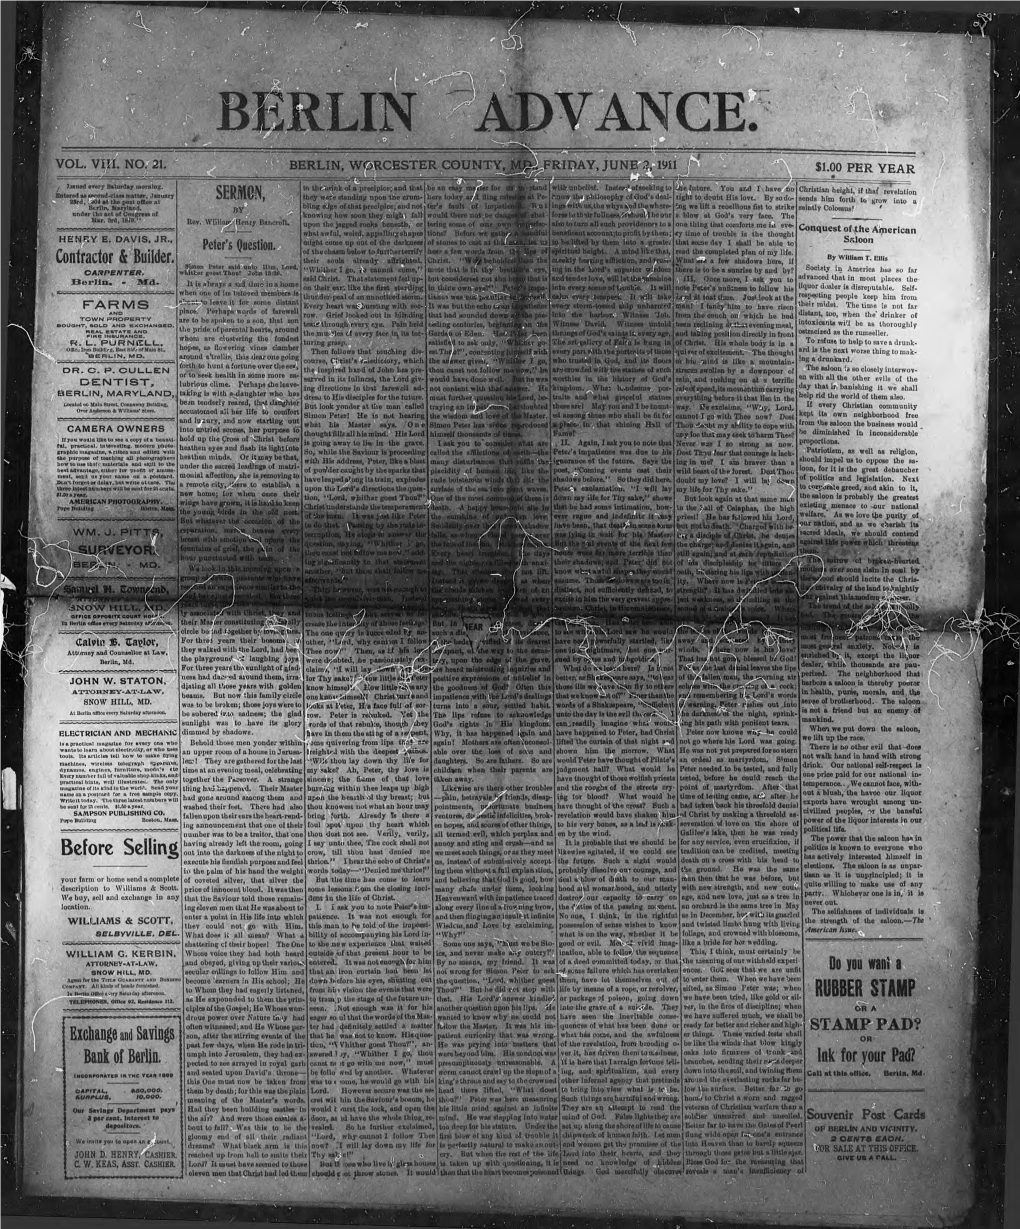 Berlin Advance 06-1911.Pdf (11.36Mb)